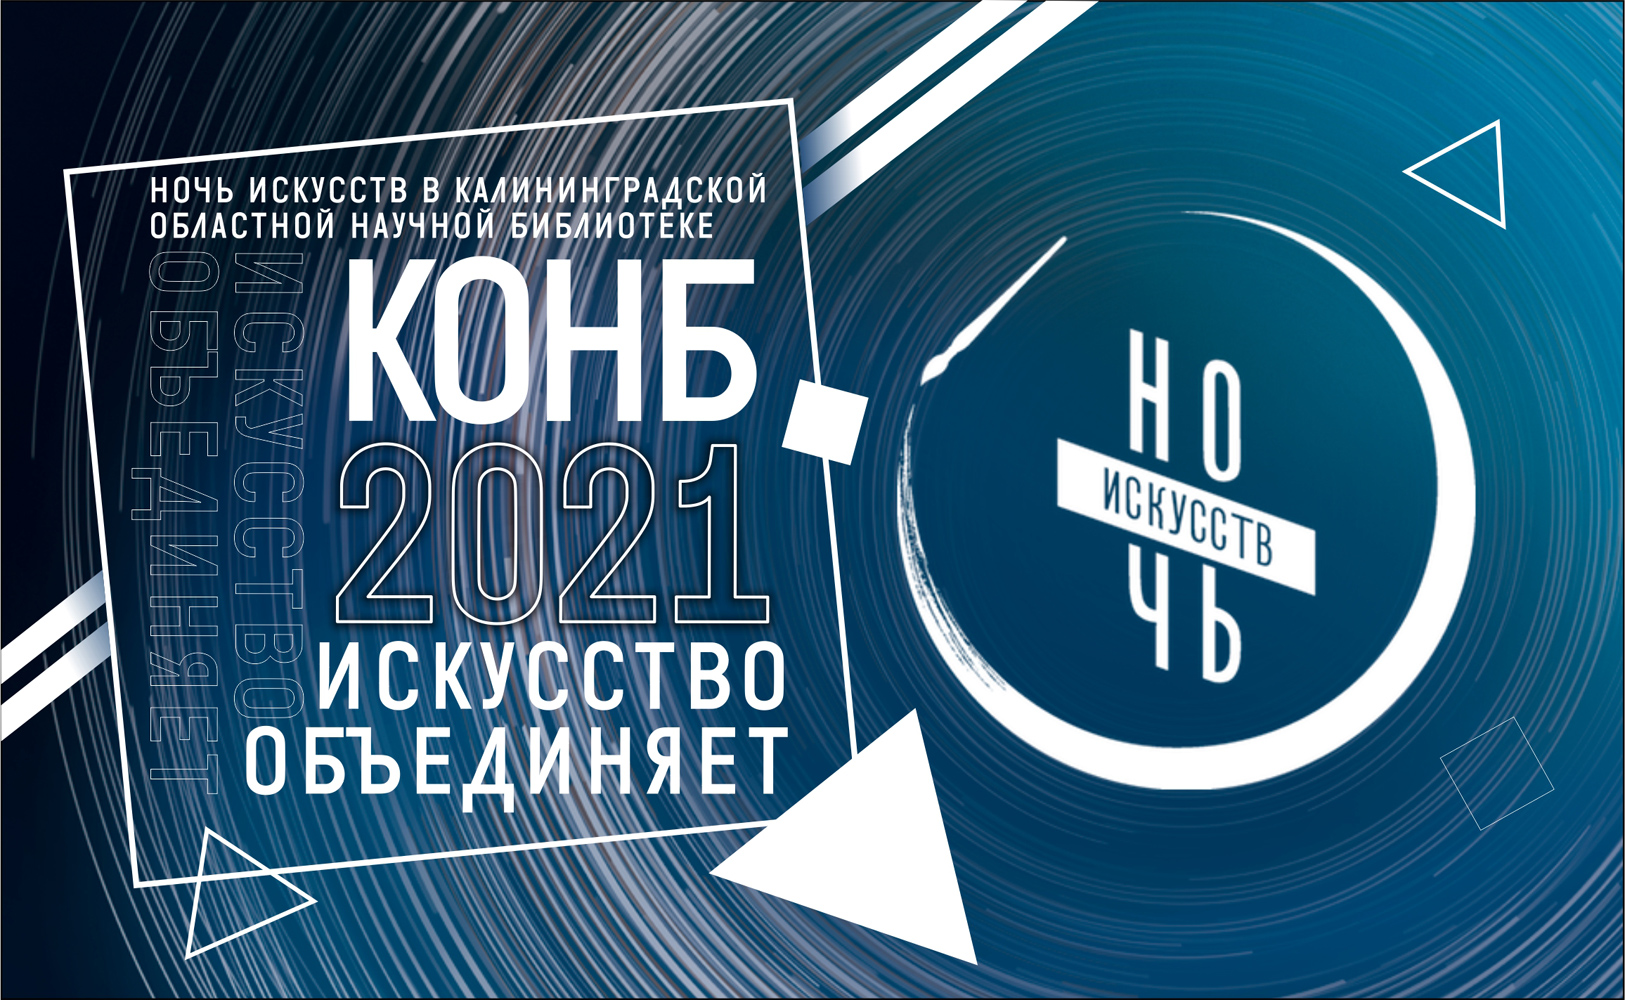 Публикуем подробную программу «Ночи искусств» в Калининграде со ссылками на трансляции